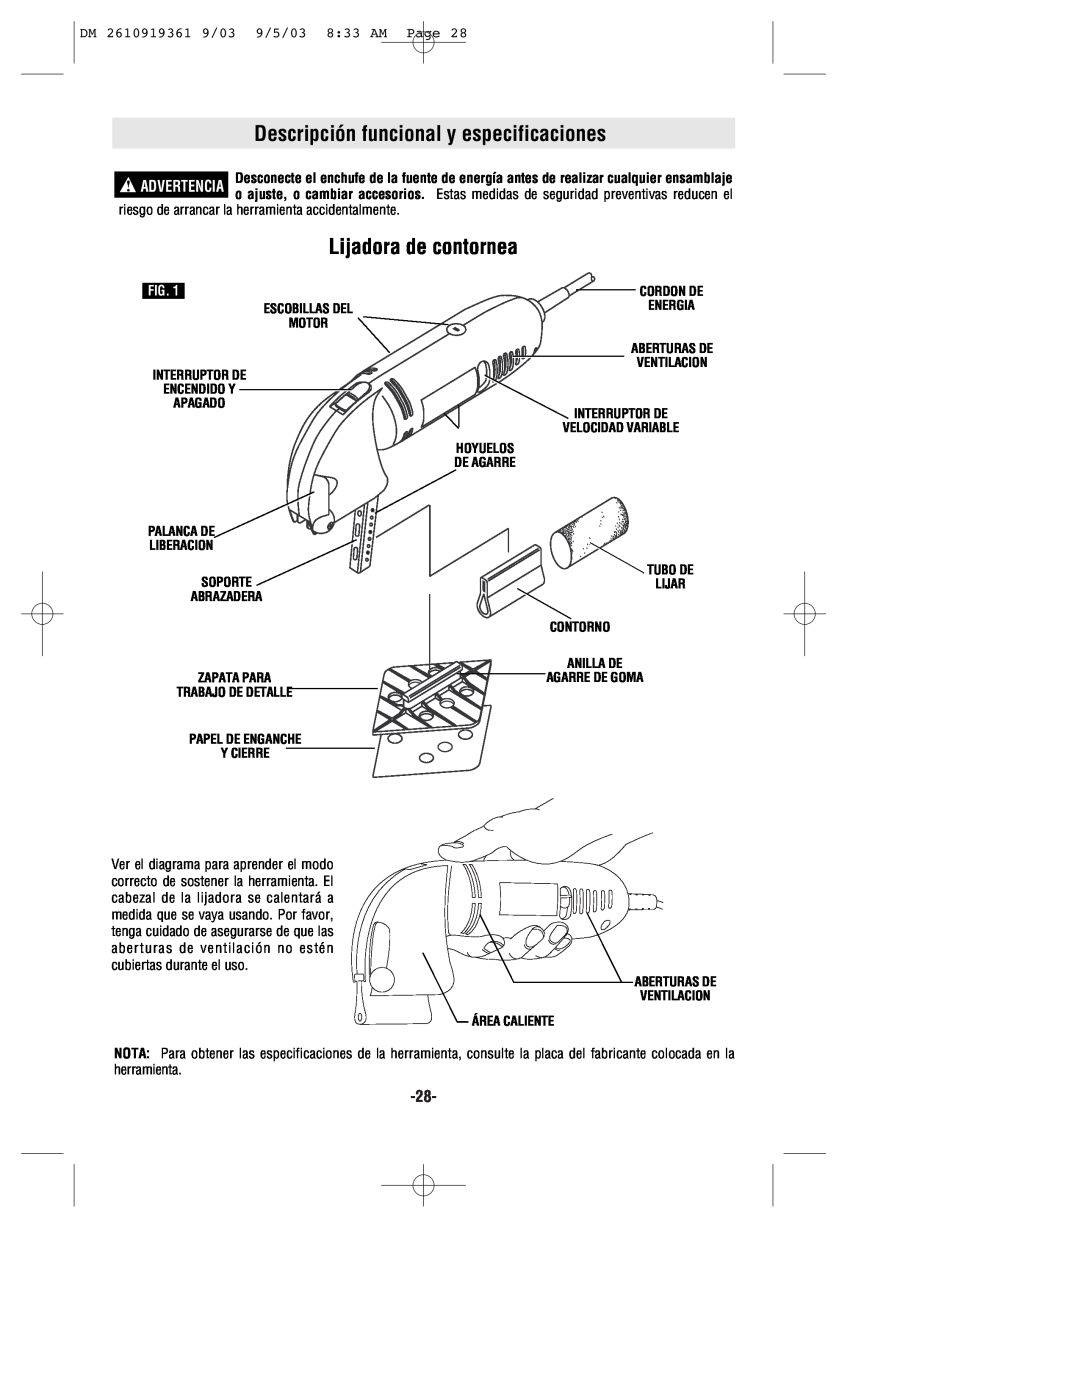 Bosch Power Tools 6000 owner manual Descripción funcional y especificaciones, Lijadora de contornea, Hoyuelos, De Agarre 